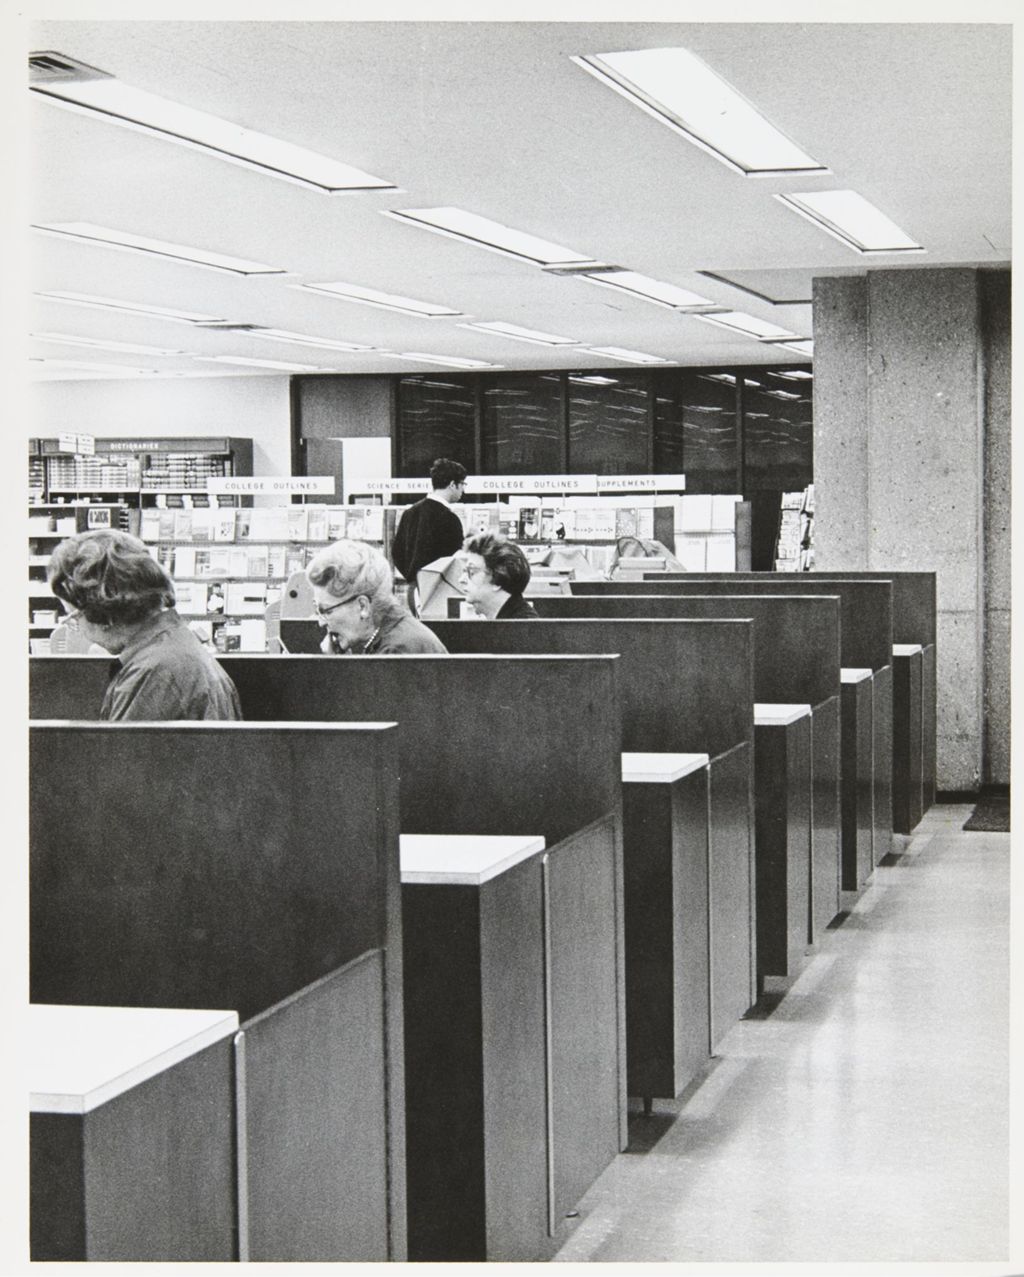 Miniature of Interior of the Campus Bookstore